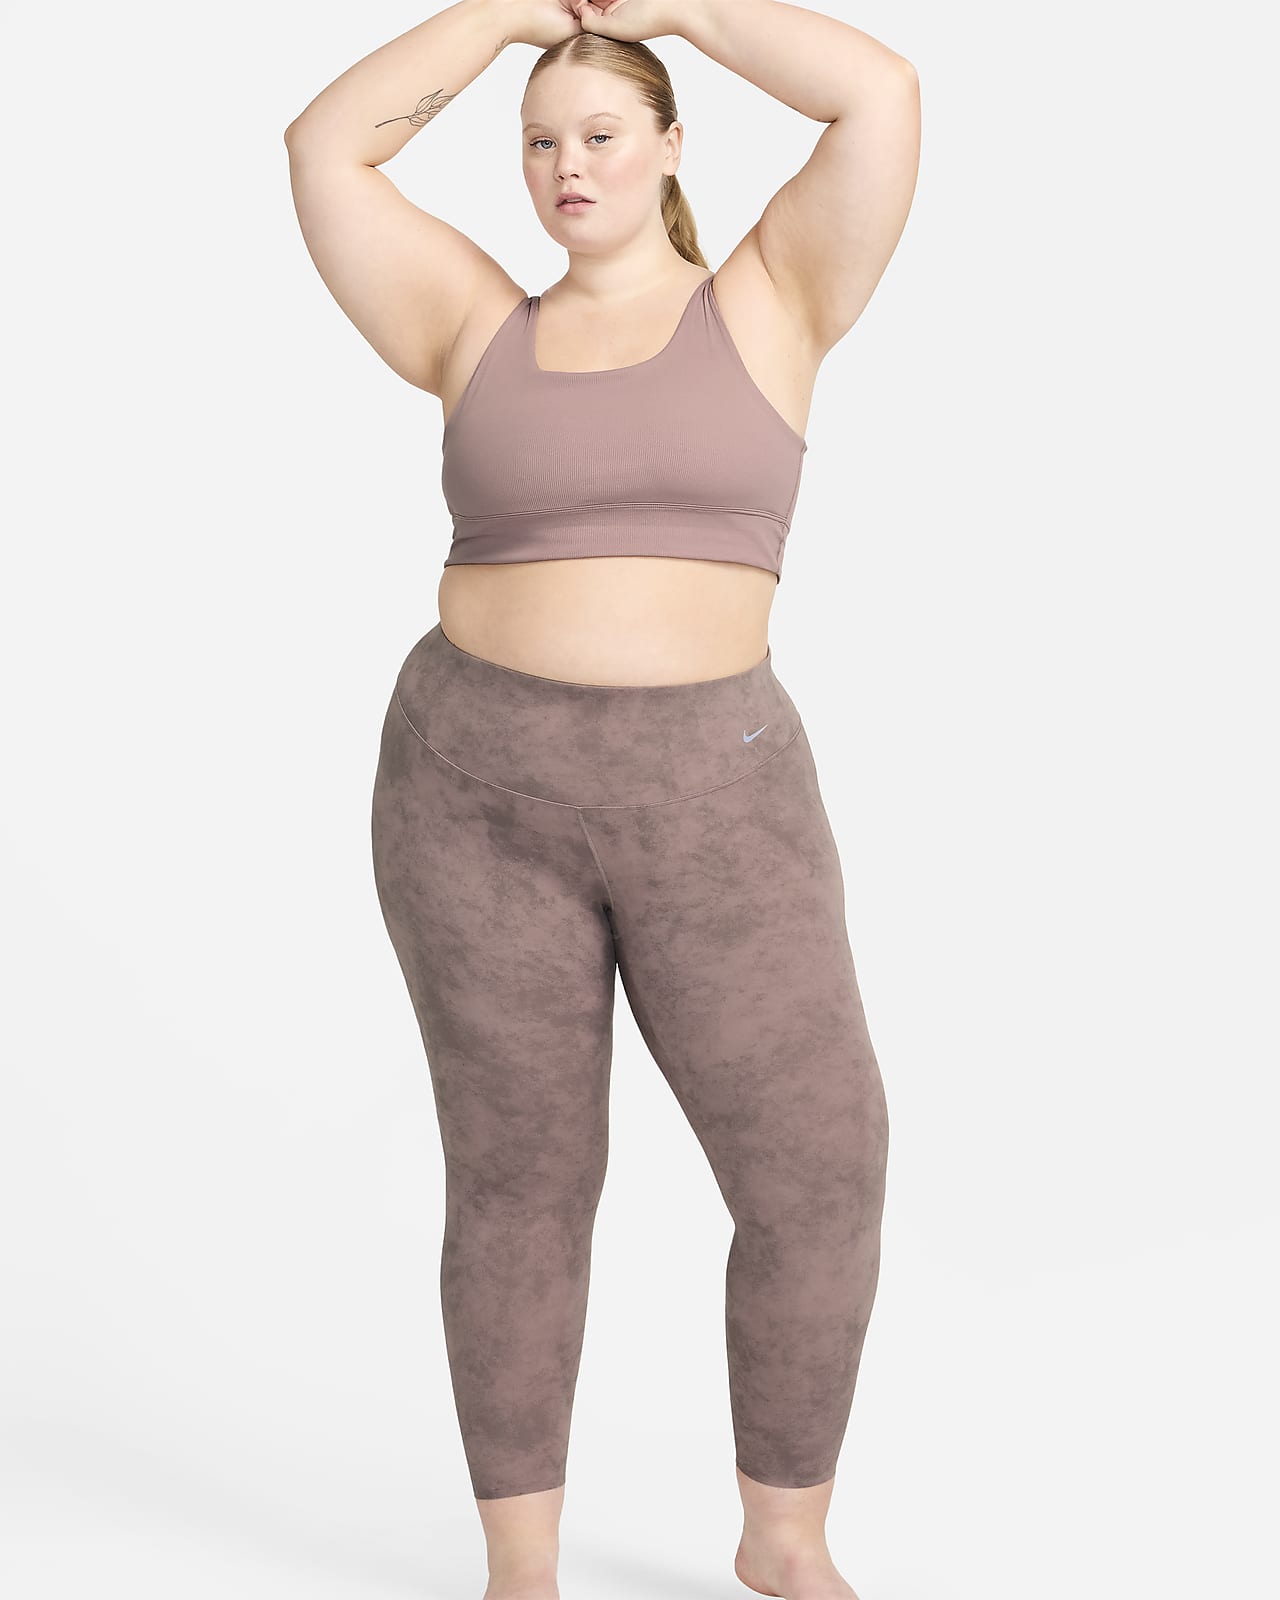 Nike Zenvy Tie-Dye-leggings i 7/8-længde med høj talje og let støtte til kvinder (plus size)